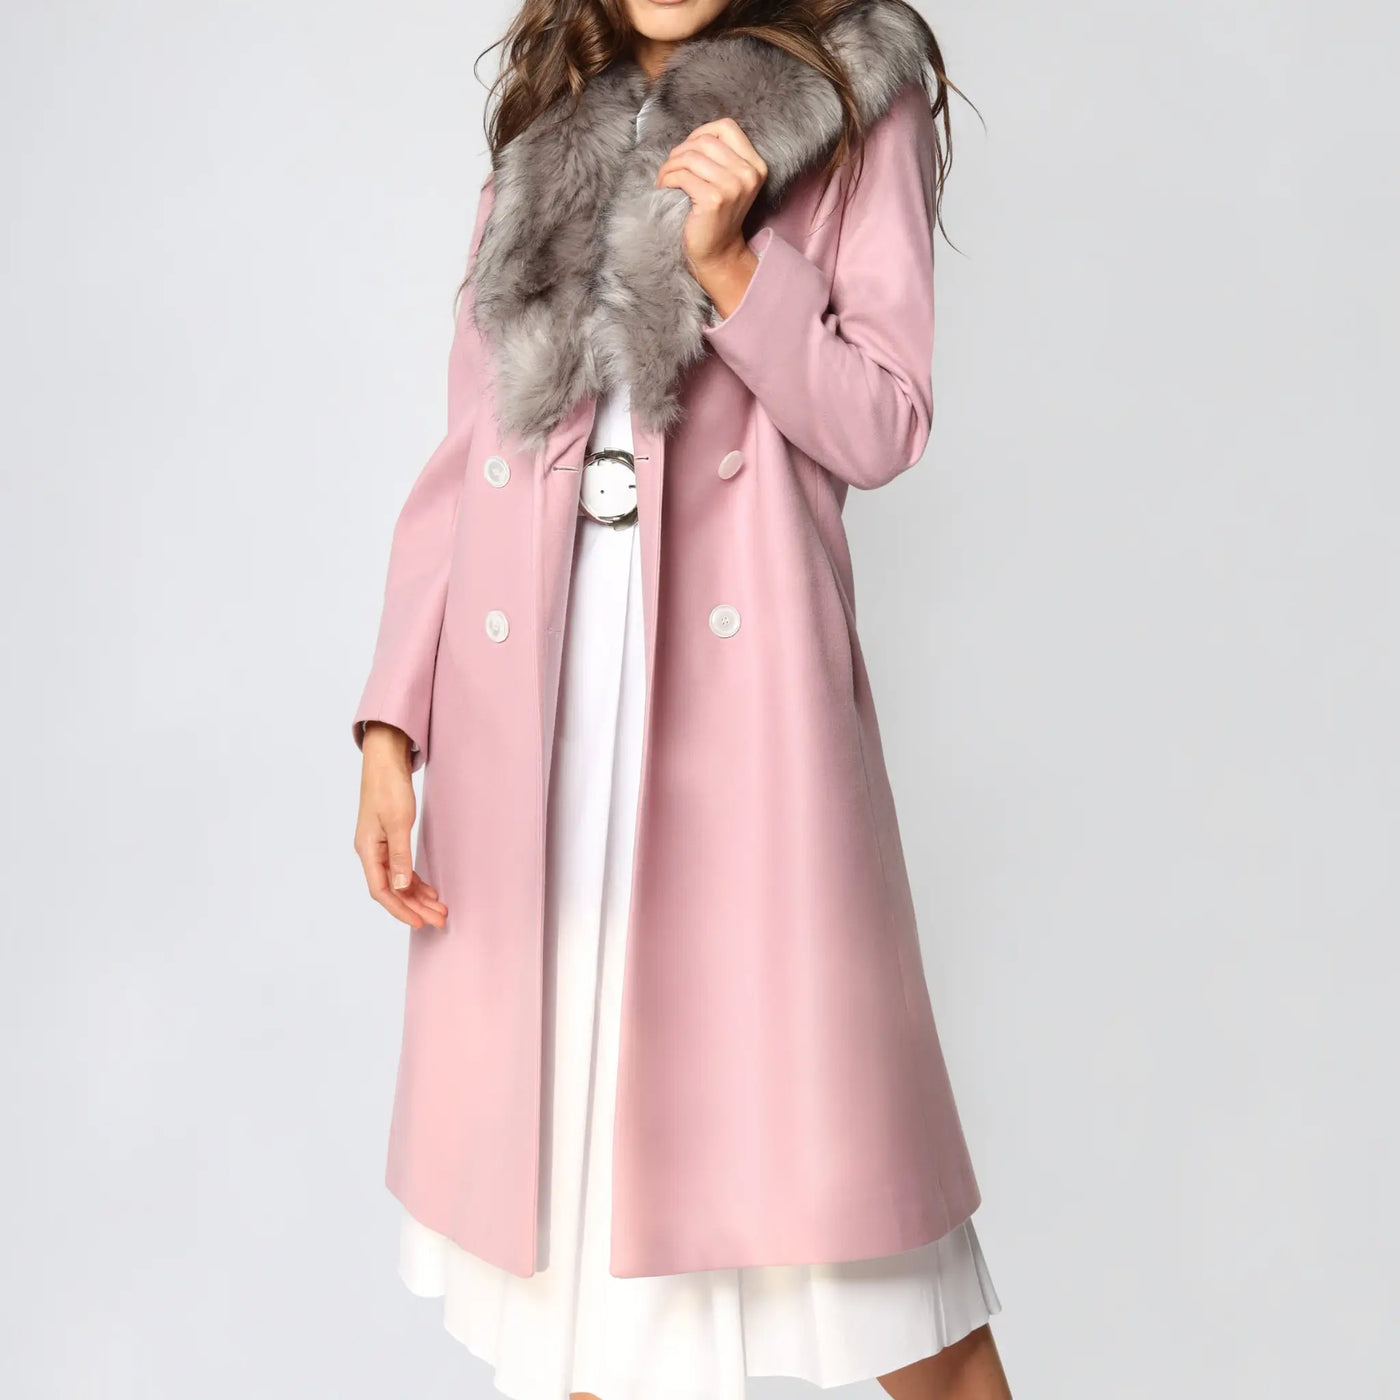 Lodevole Women's Style Alert Winter Coat Pink Front Open